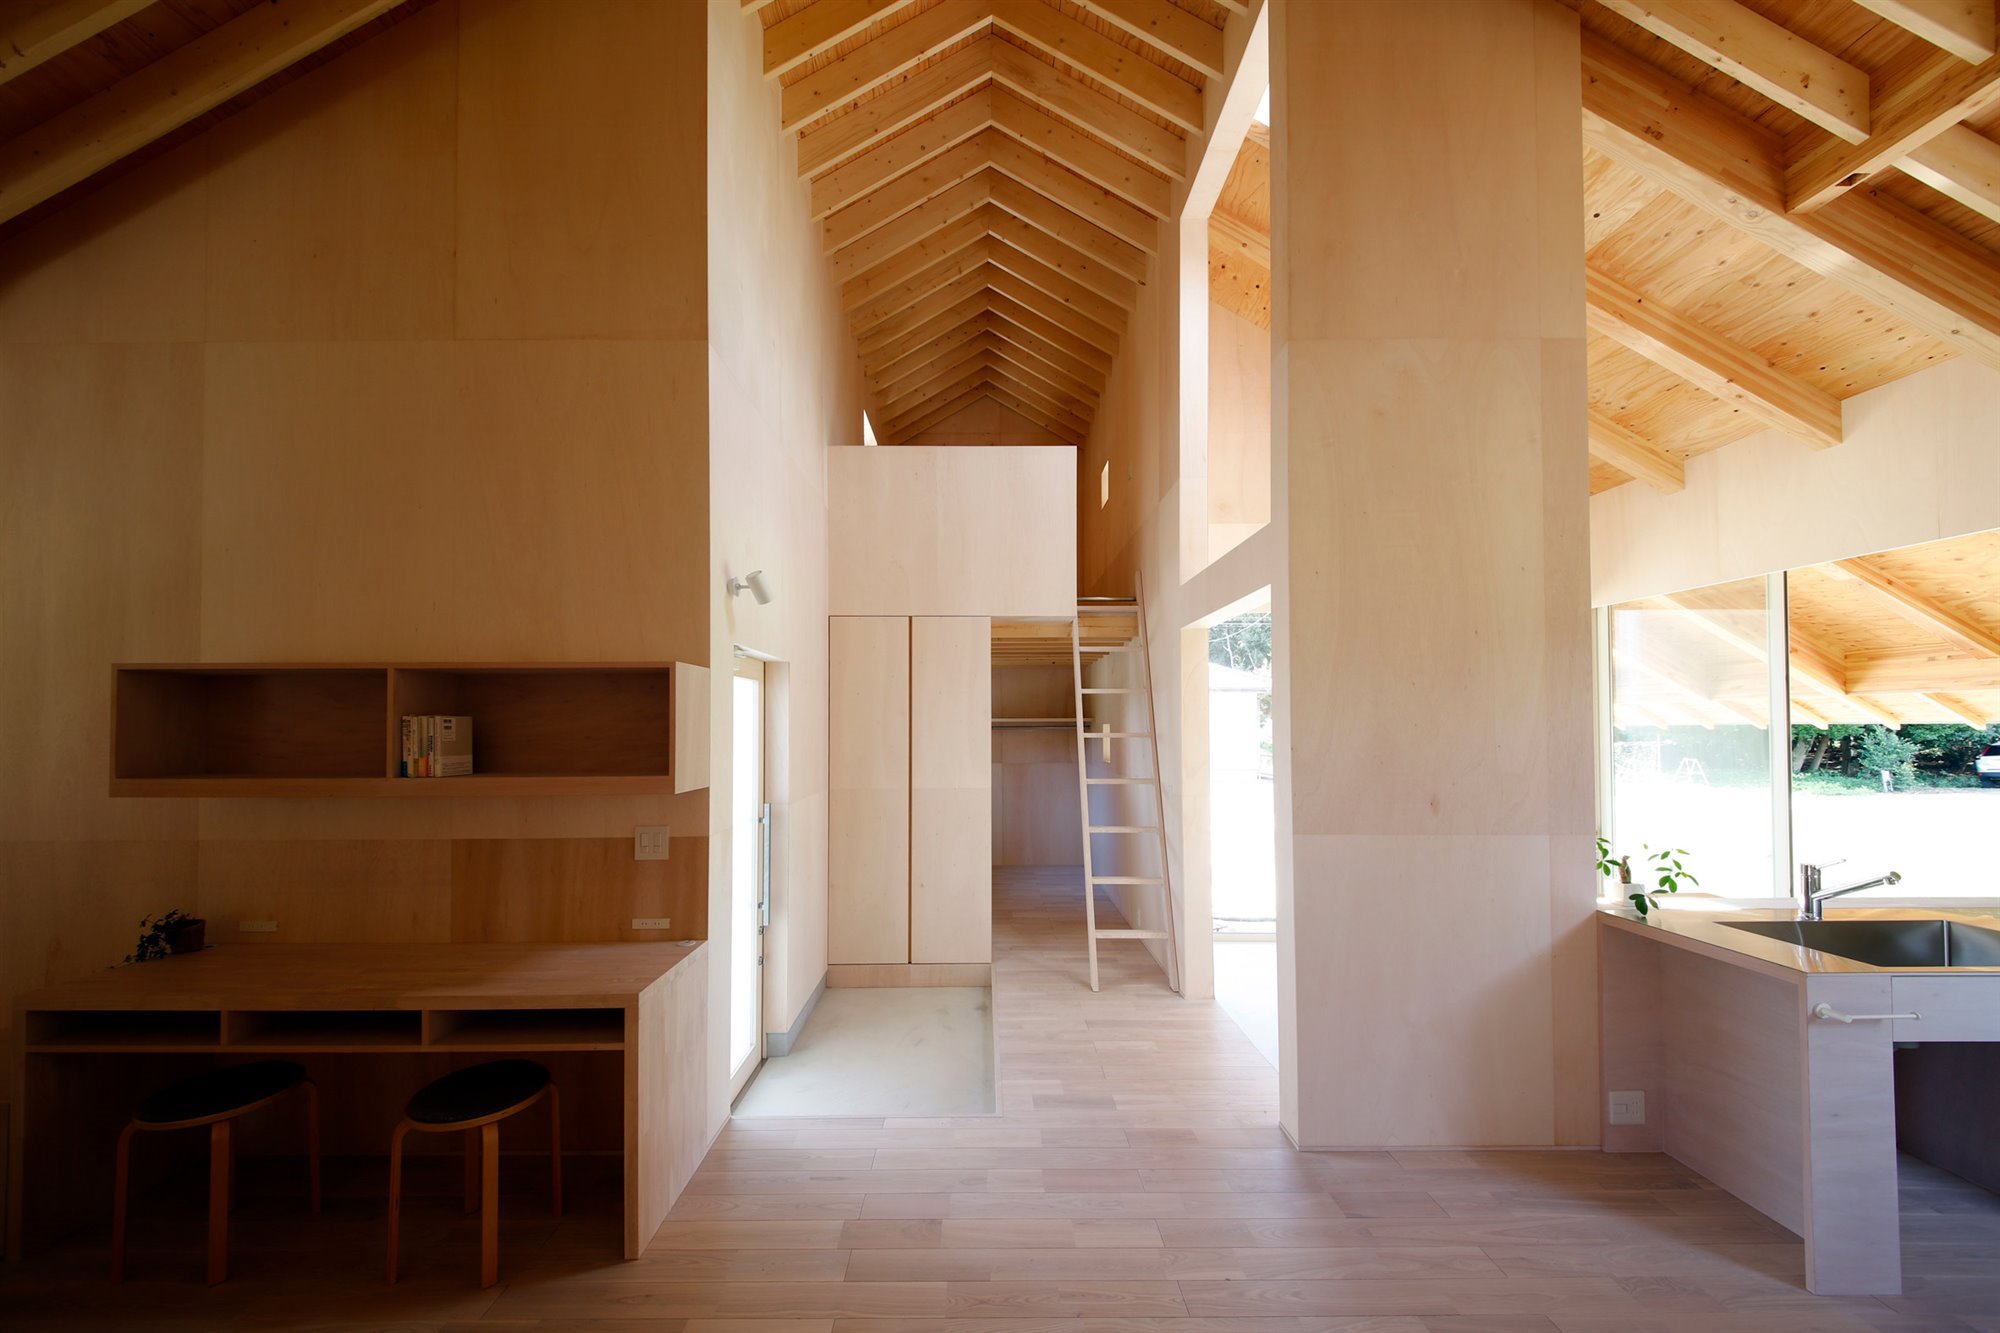 Casa en japon de los arquitectos Katsutoshi Sasaki + Associates con paredes de madera